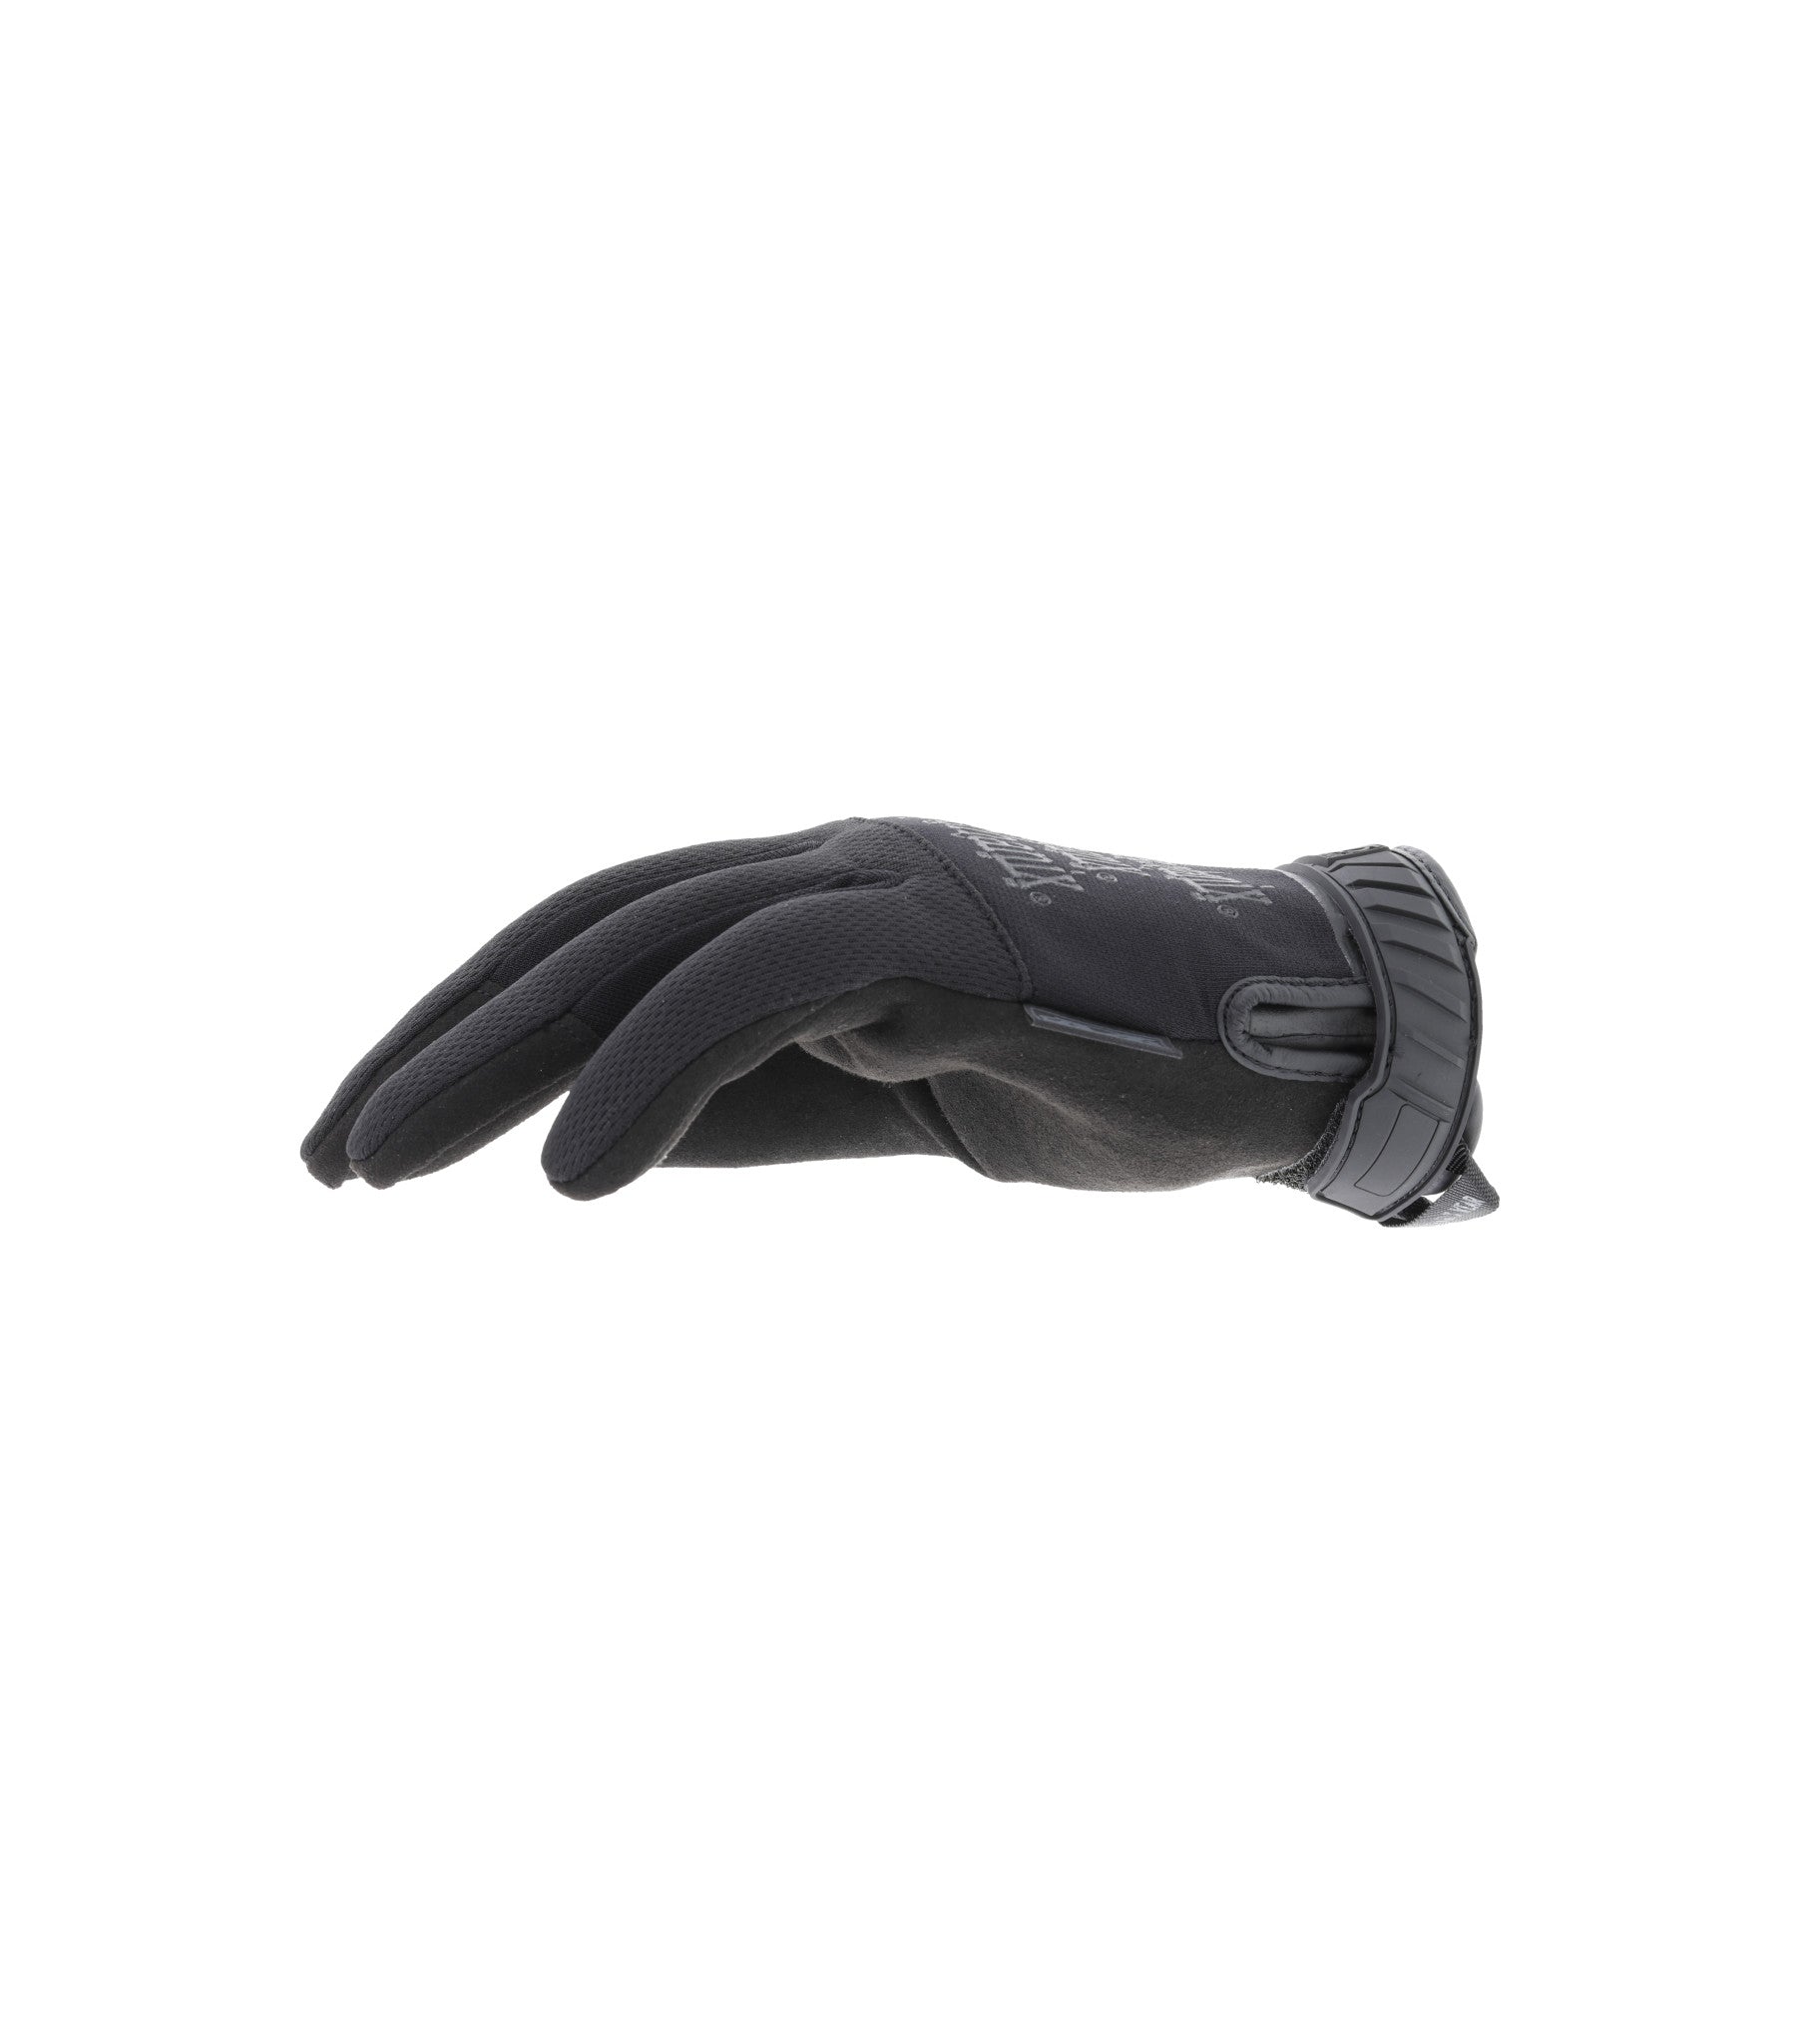 Mechanix Pursuit D5 Cut Resistance Tactical Gloves – Black | Mechanix